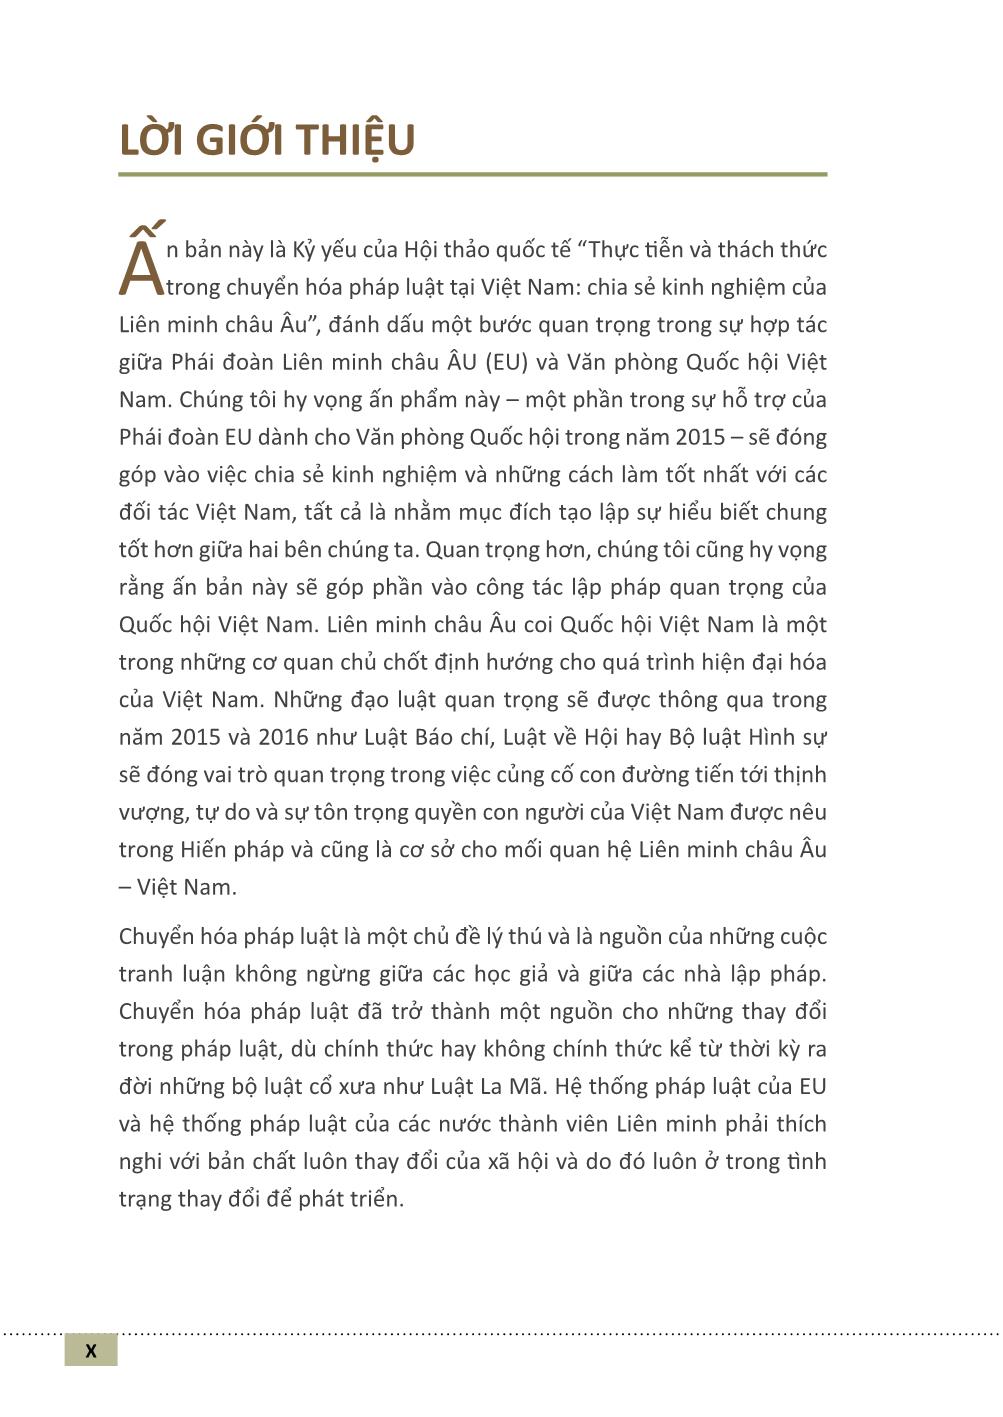 Chuyển hóa pháp luật và các vấn đề ở Việt Nam (Phần 1) trang 9